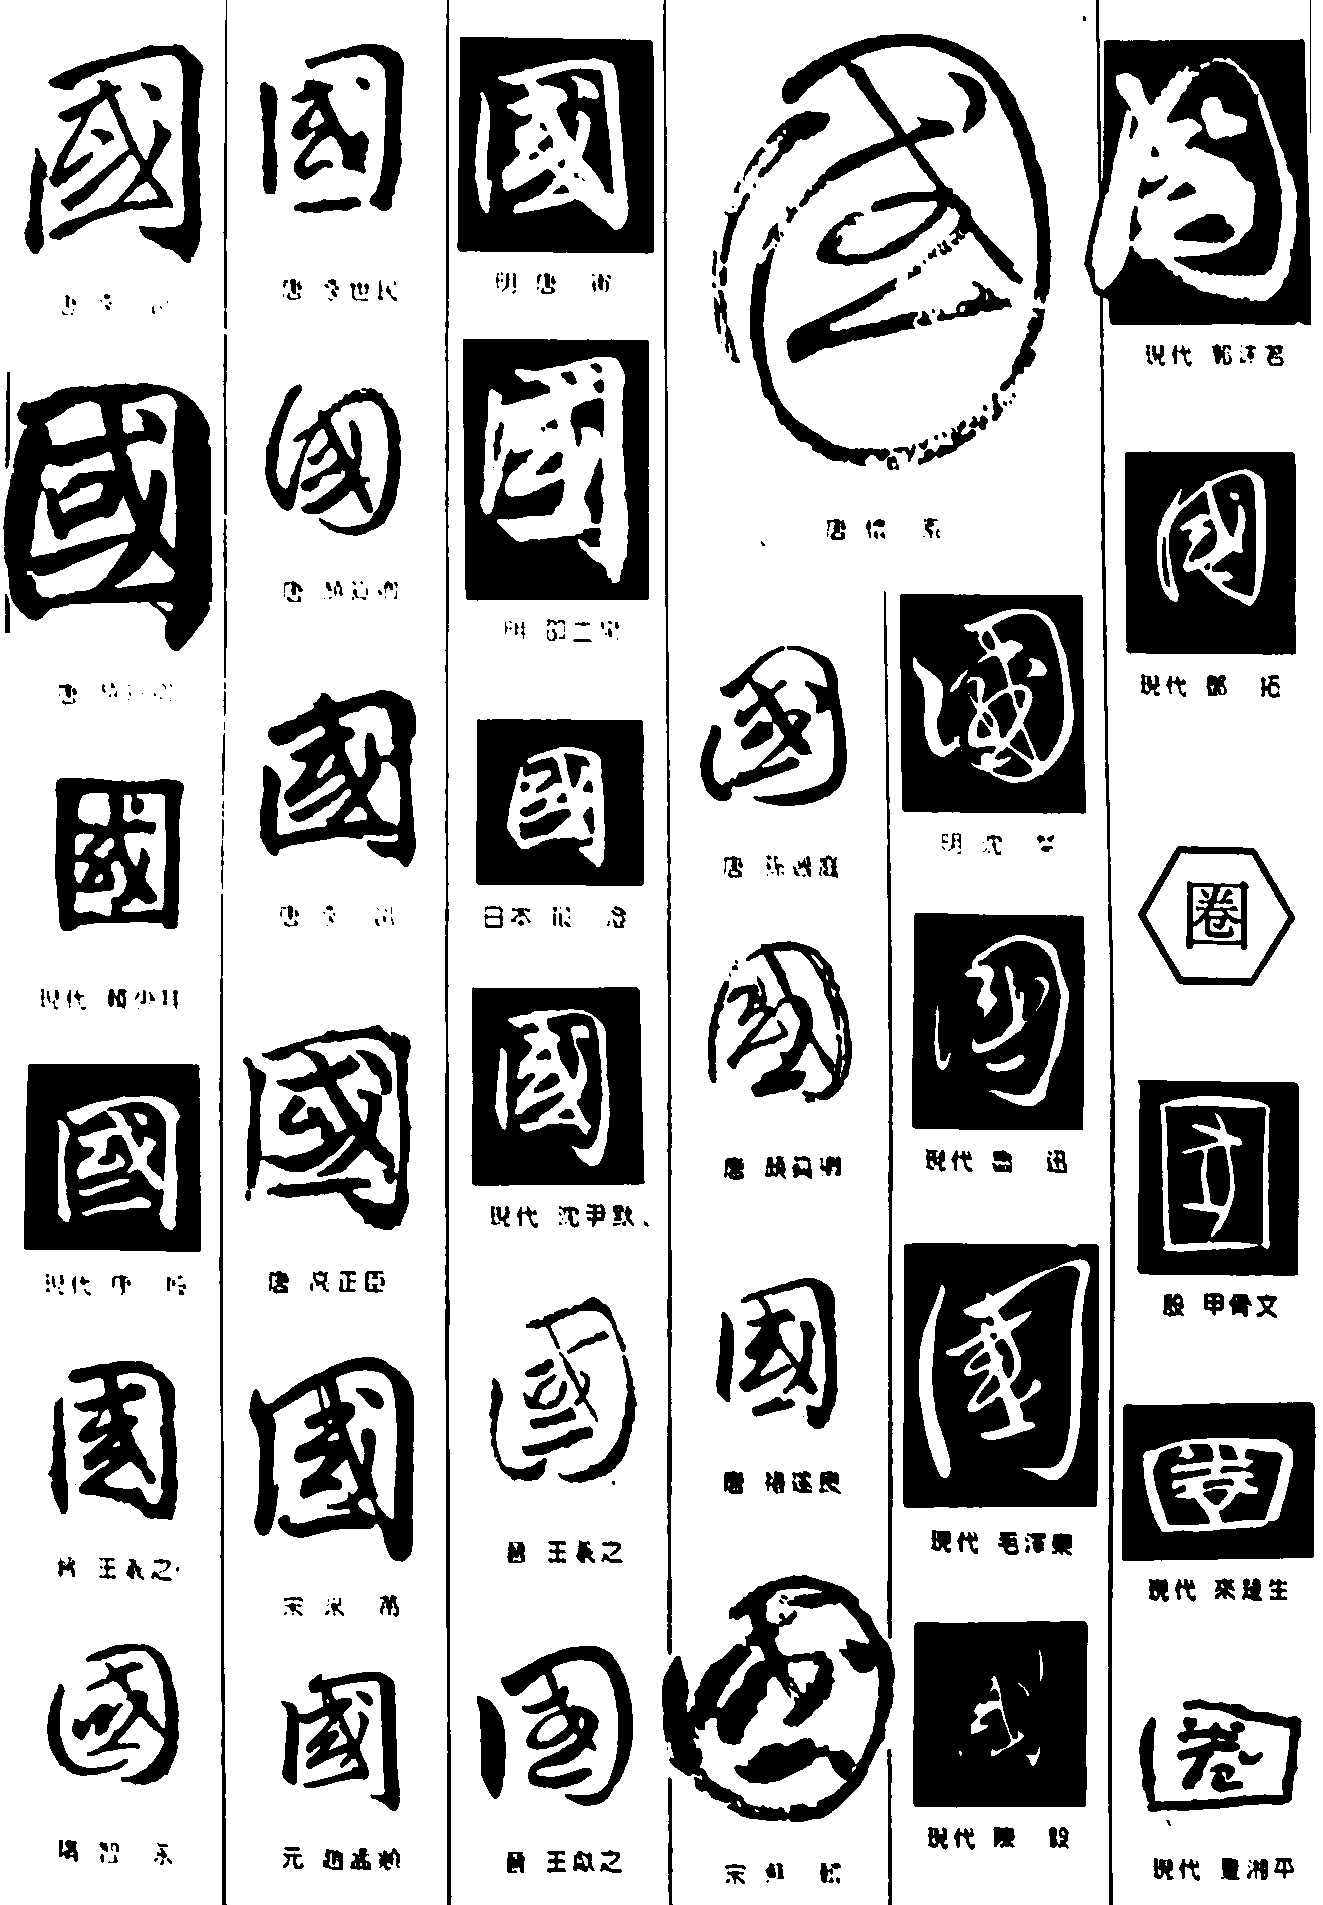 国圈国_书法字体_字体设计作品-中国字体设计网_ziti.